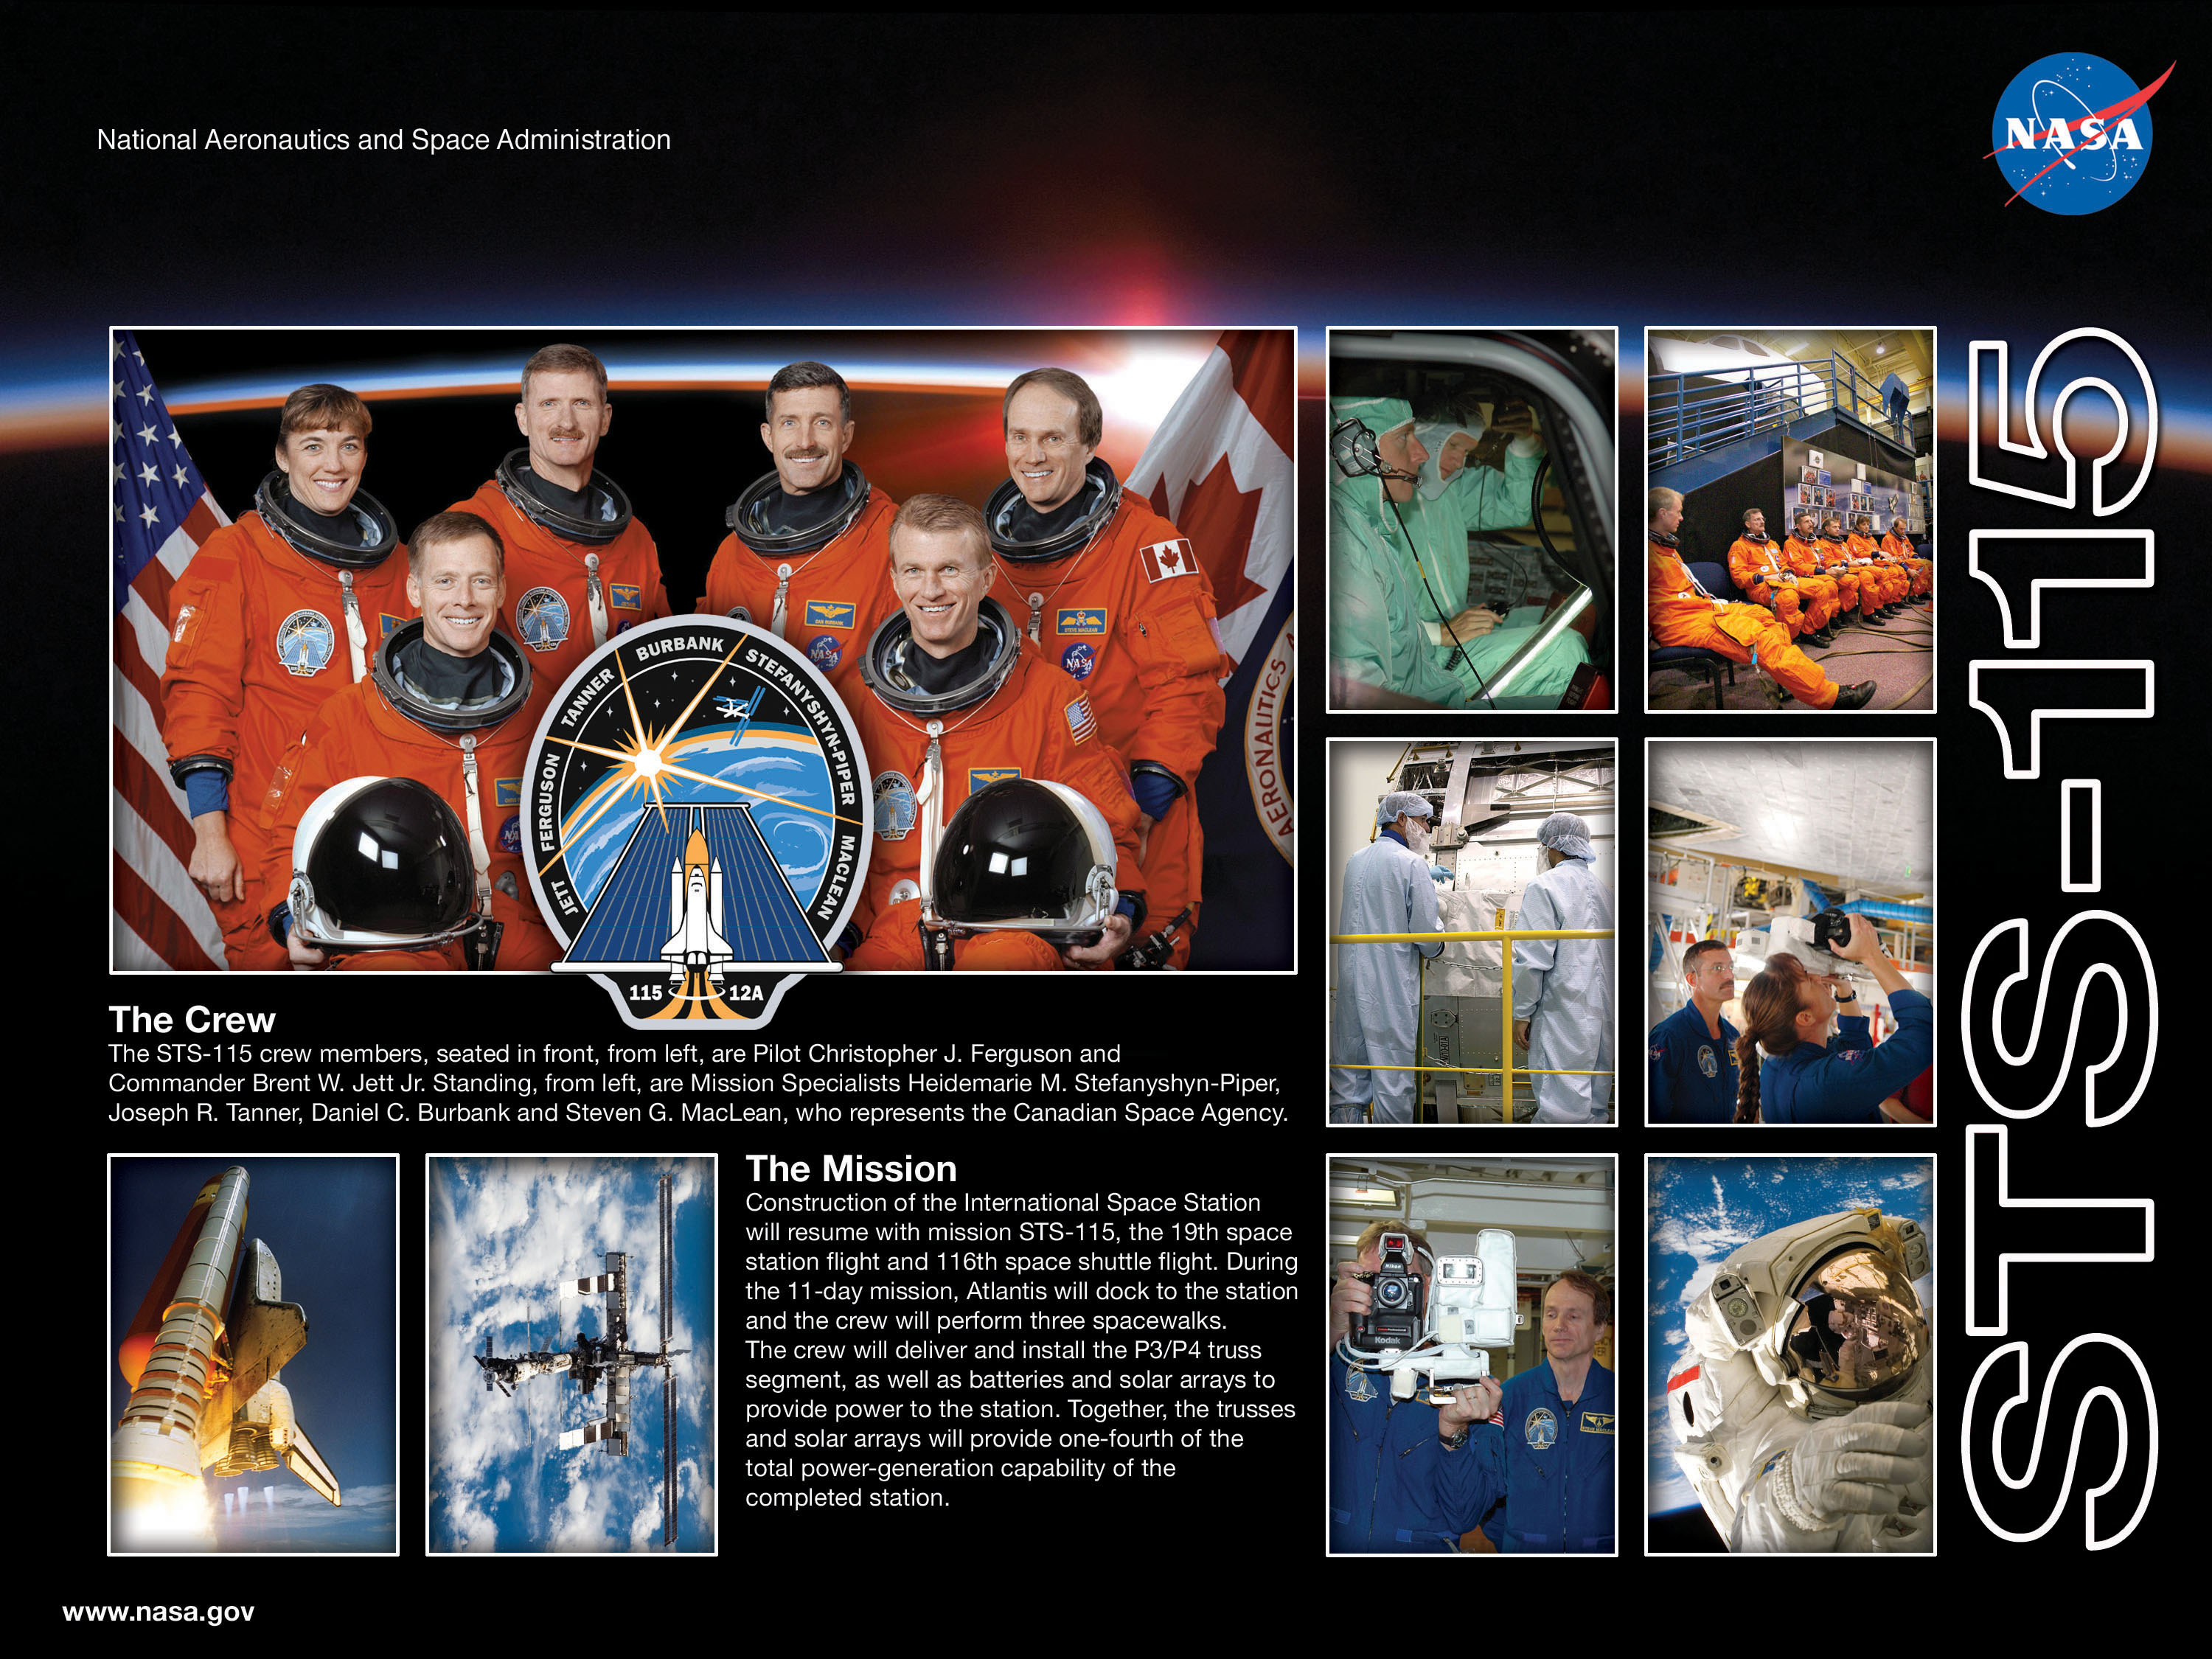 STS-115 crew poster. Image credit NASA